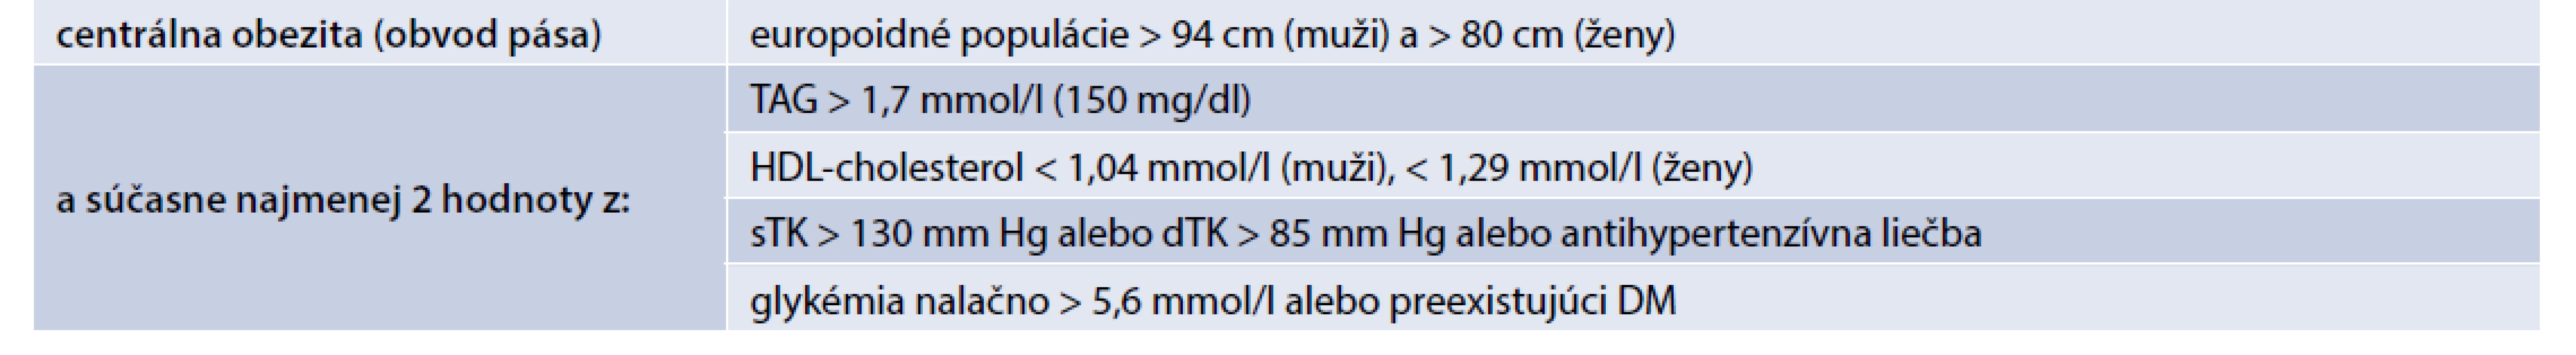 Diagnostické kritéria pre metabolický syndróm (IDF, 2005)